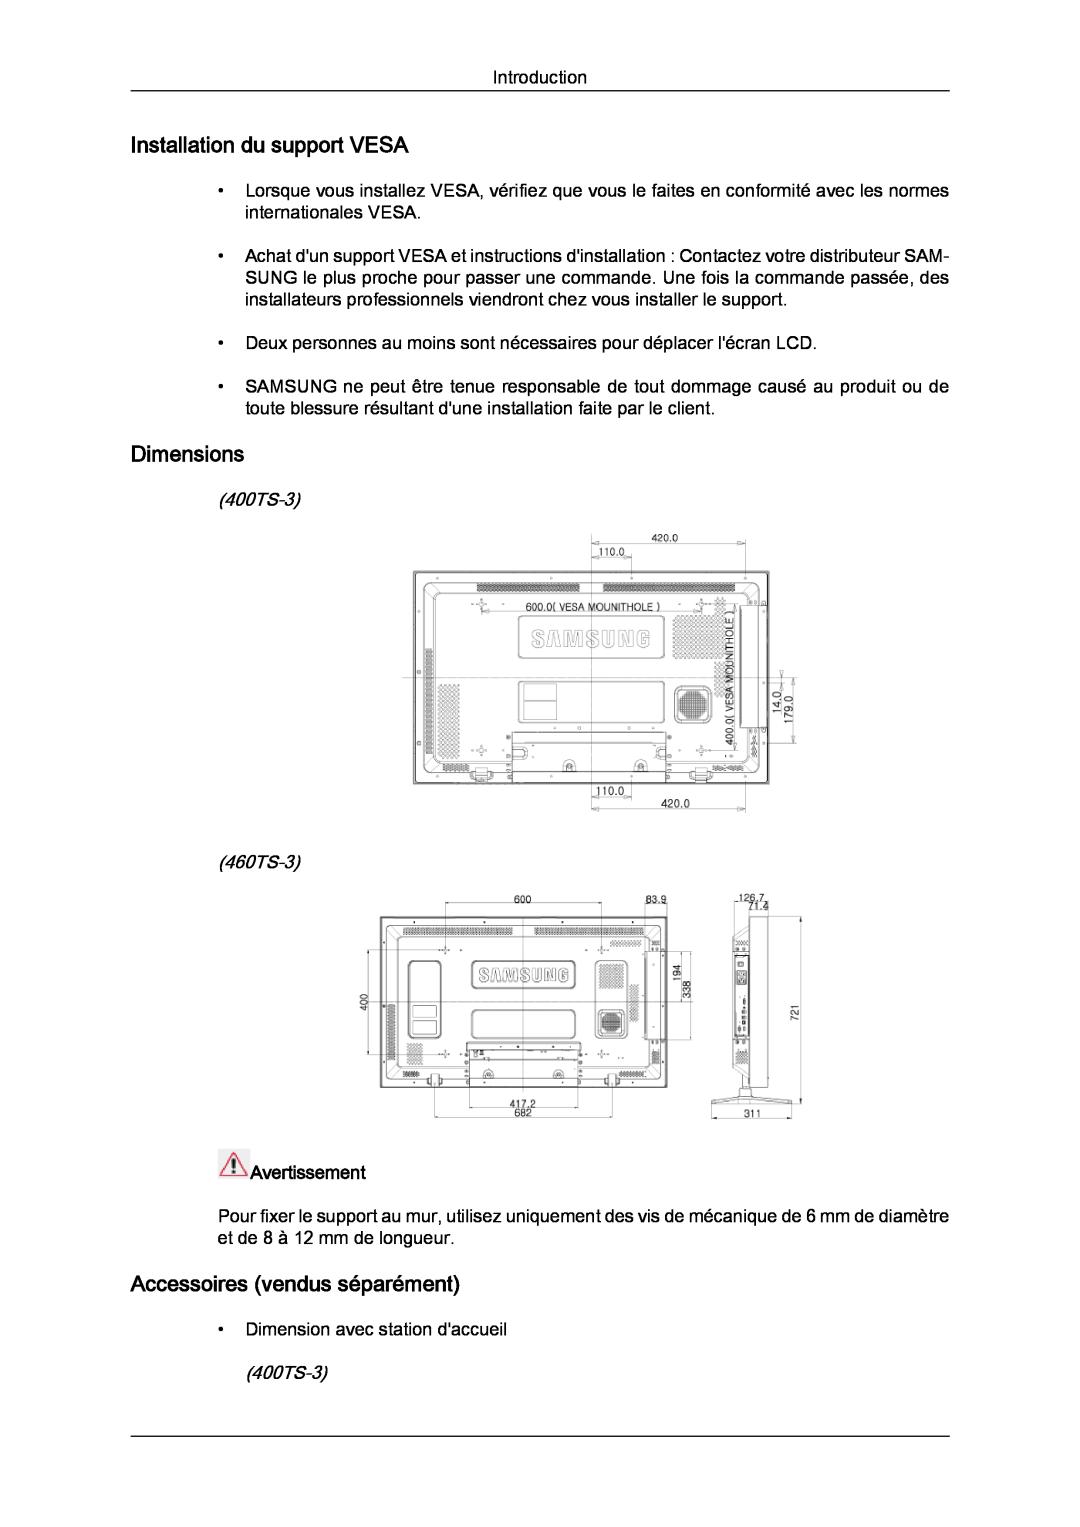 Samsung LH46CRPMBC/EN manual Installation du support VESA, Dimensions, Accessoires vendus séparément, 400TS-3 460TS-3 